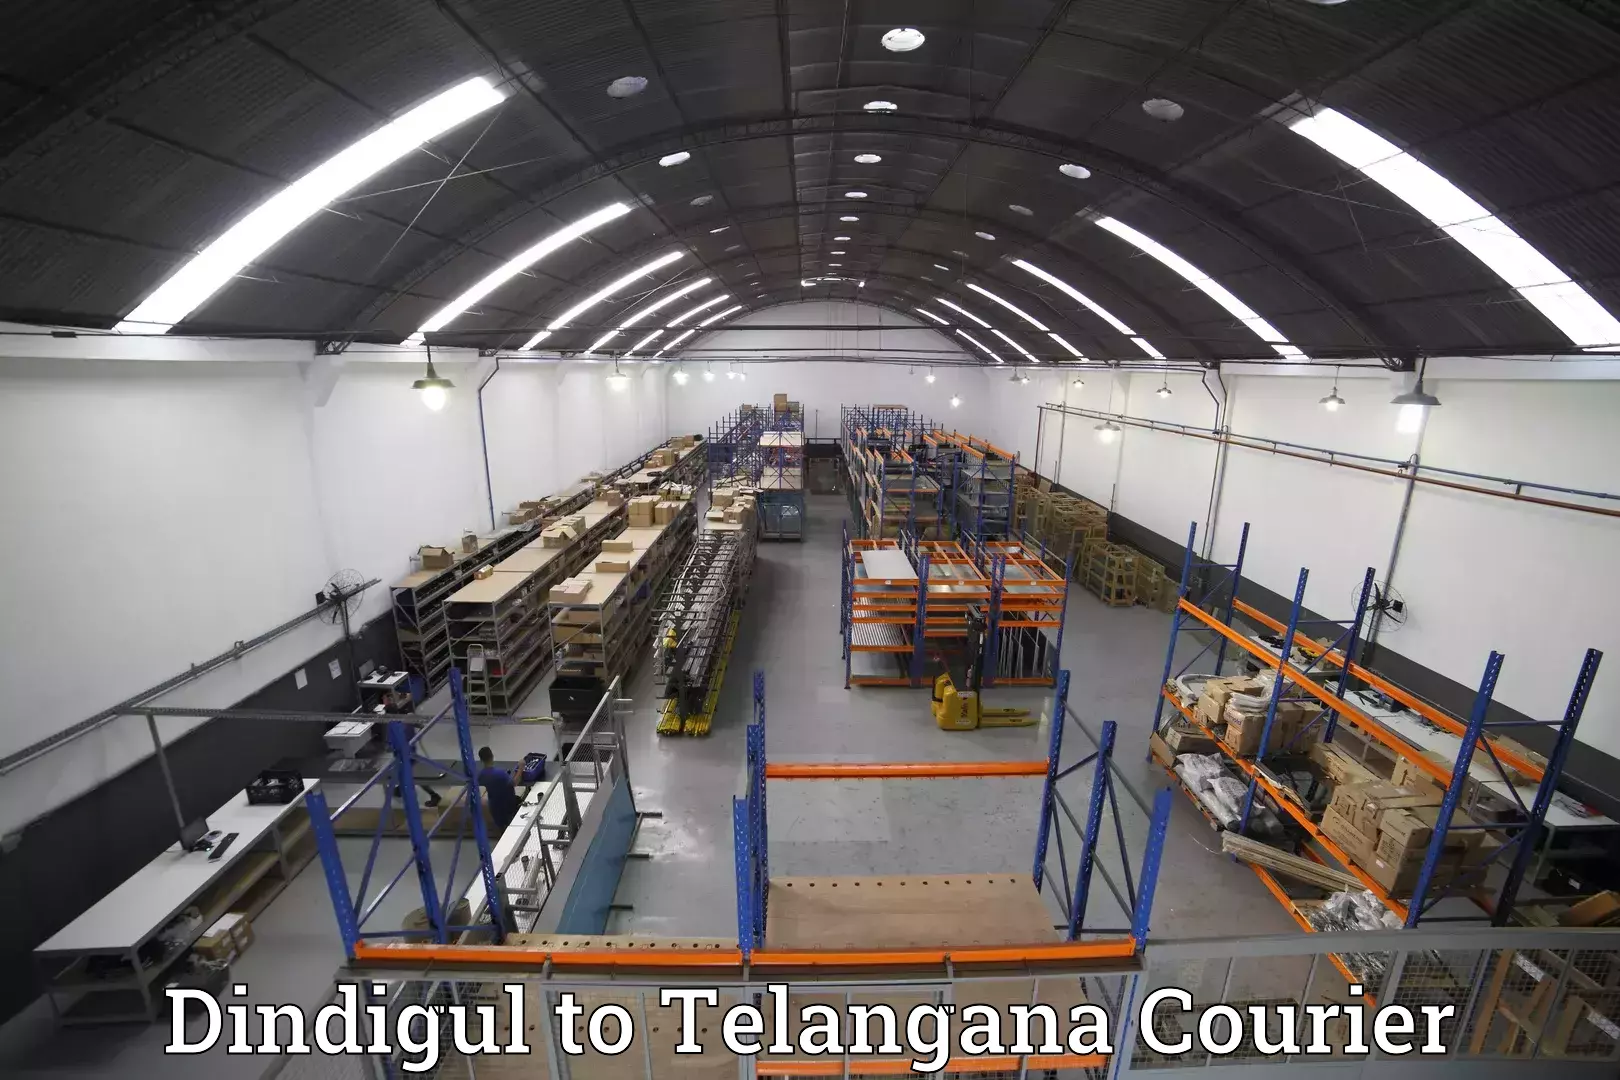 Luggage shipment specialists Dindigul to Telangana